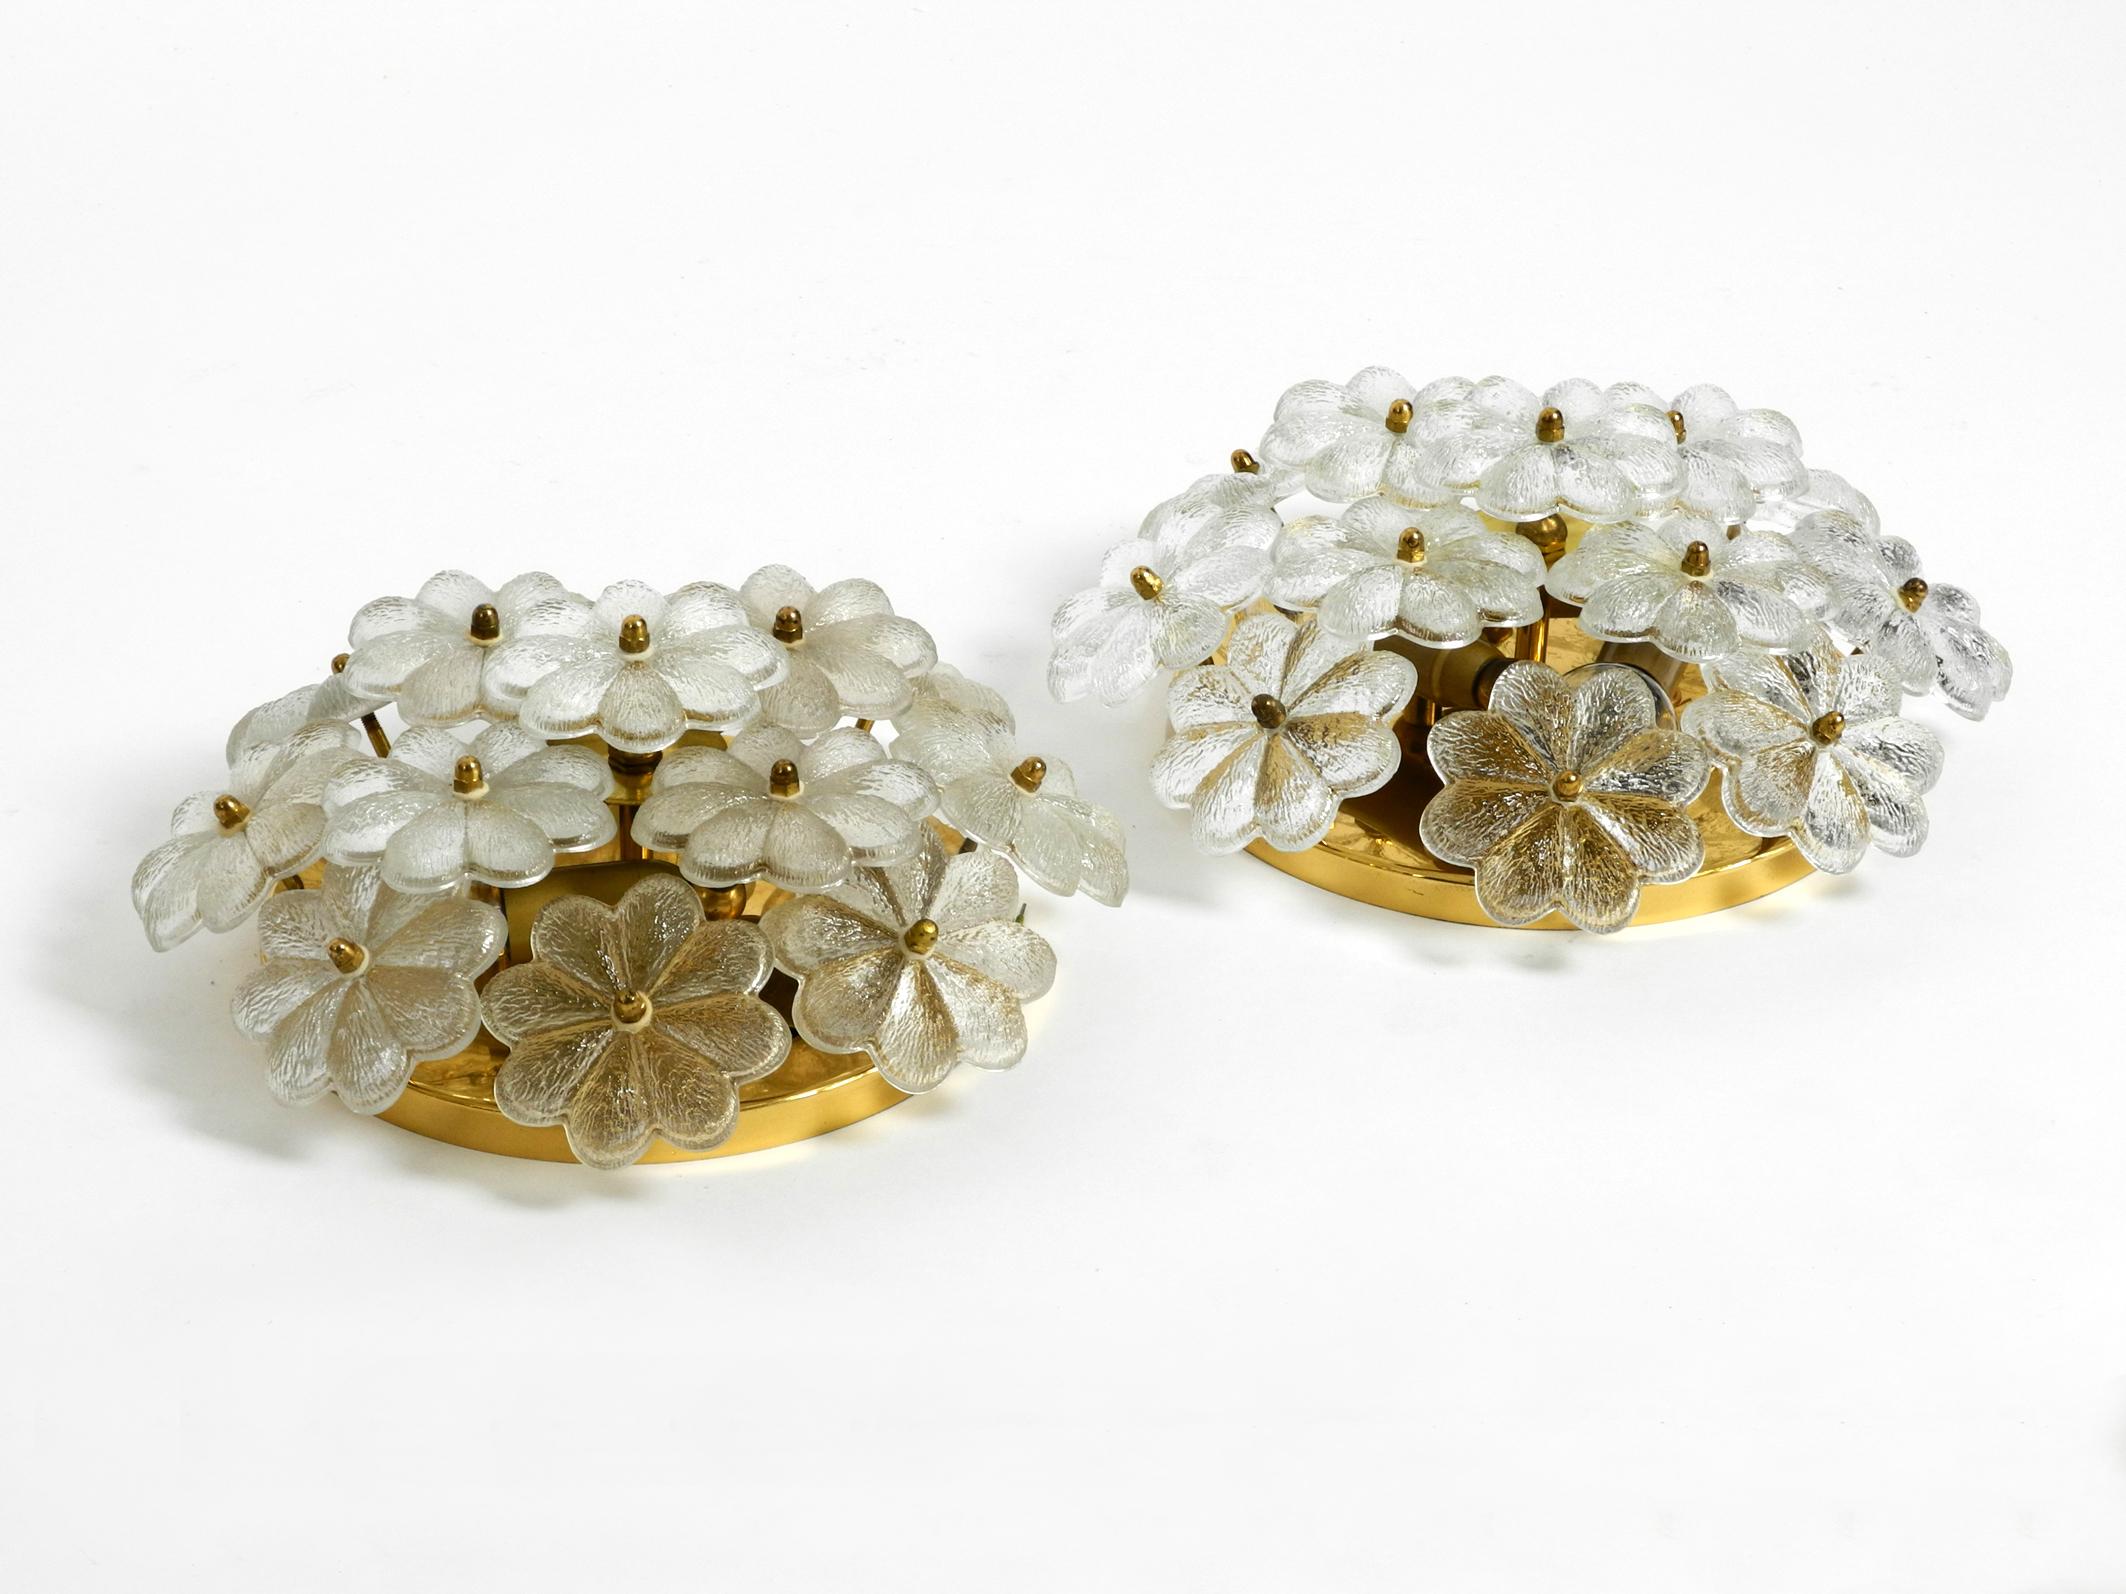 Zwei sehr elegante, seltene Blumen-Deckenlampen aus Messing-Kristallglas aus den 1970er Jahren von Ernst Palme.
Original Labels auf der Rückseite. Drei E14-Glühbirnen auf einer Messingplatte für je 40 W.
Alle Glasblumen sind einzeln